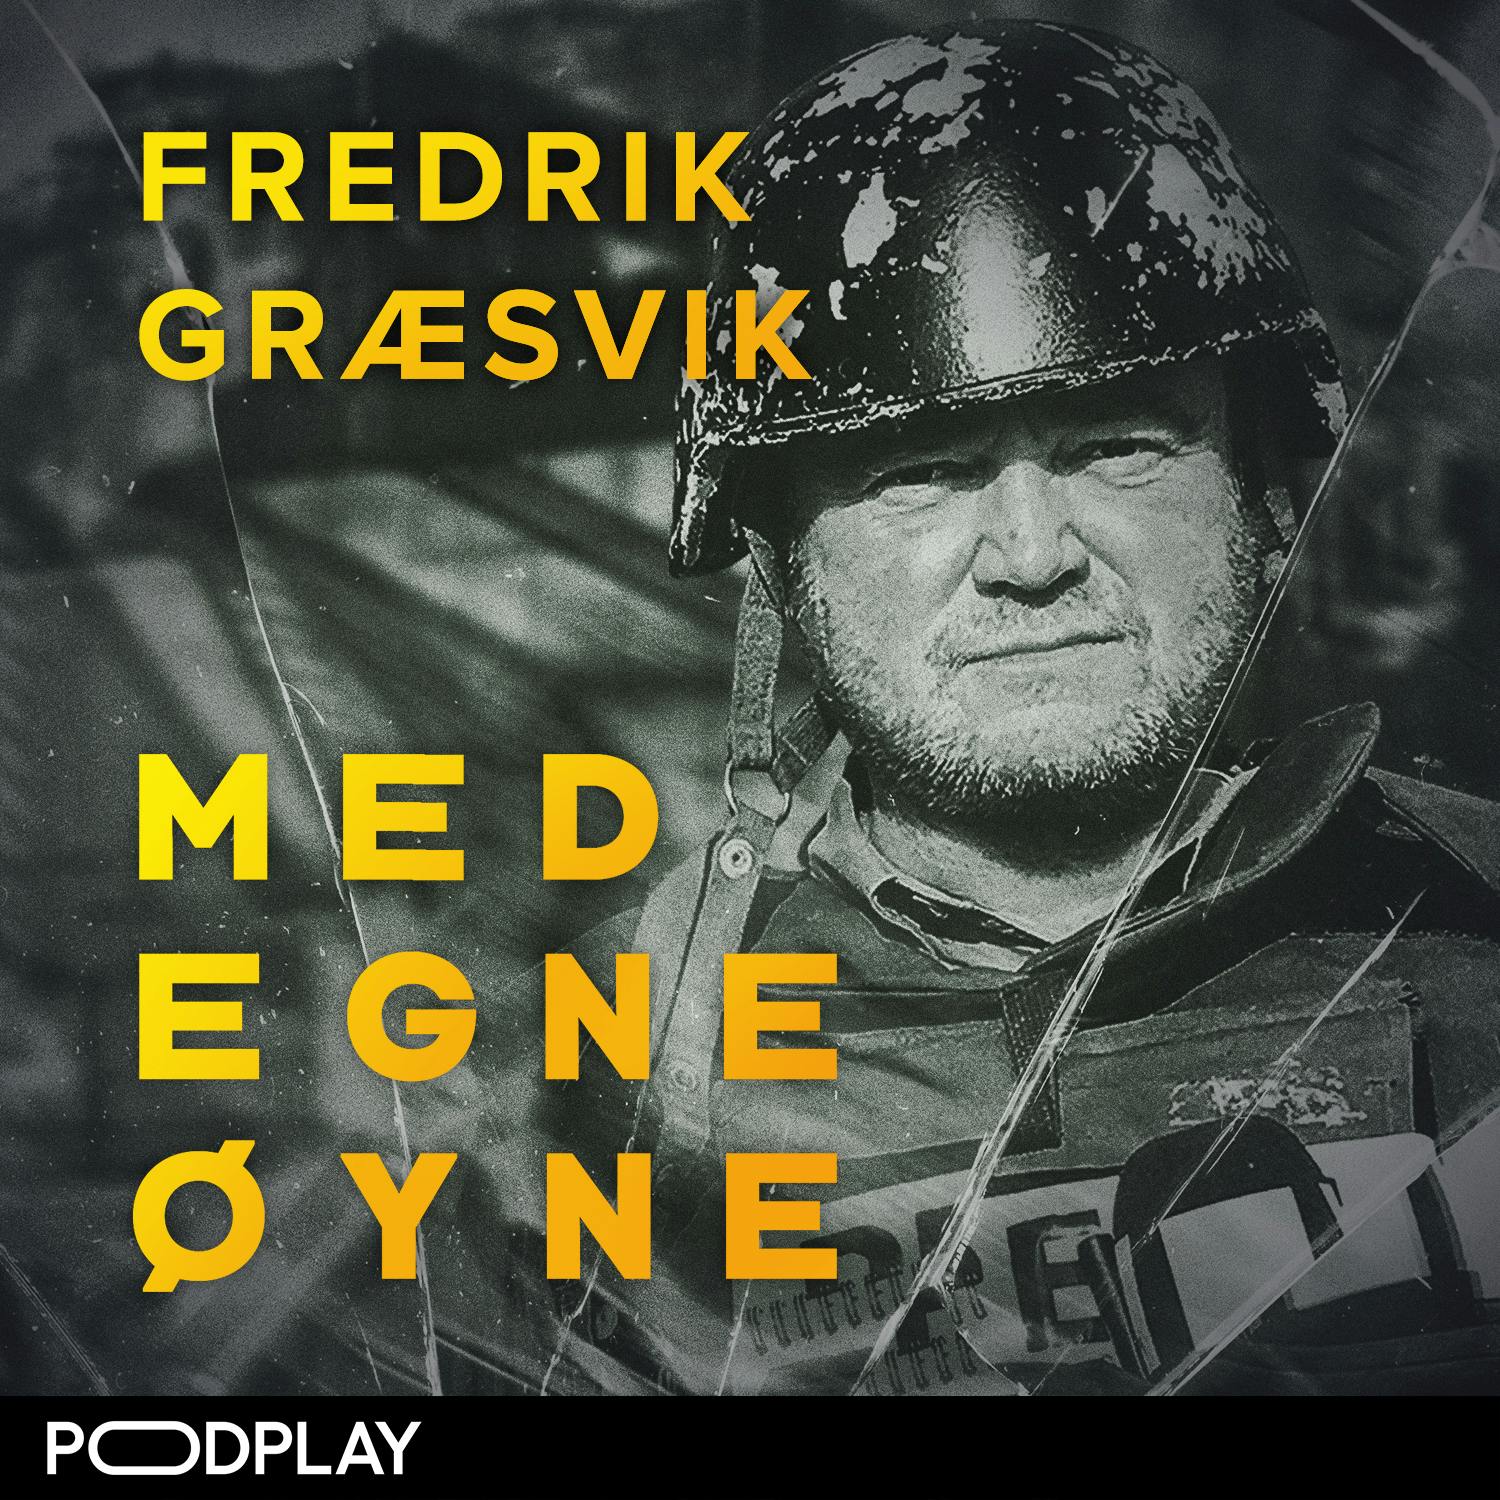 Fredrik Græsvik: Den islamske staten